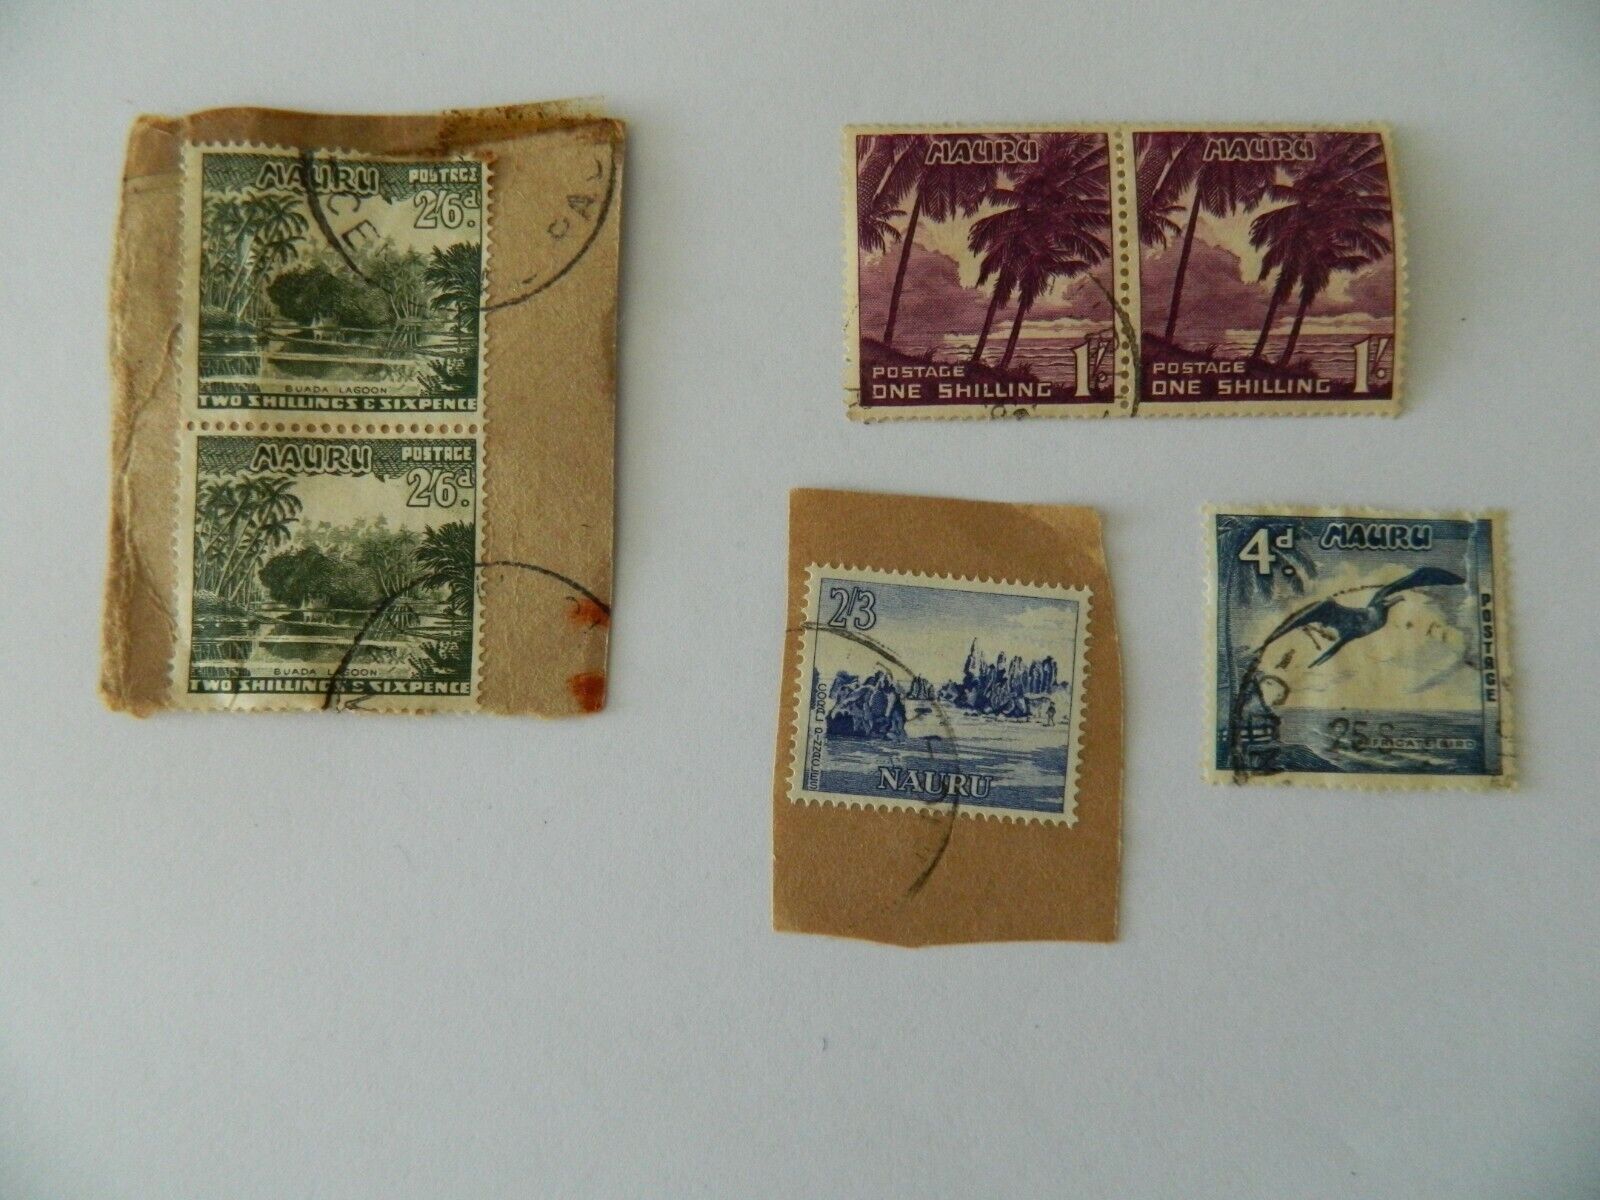 Vintage Stamps Used MAURU Postage 1 & 2 Shilling 4pcs Без бренда